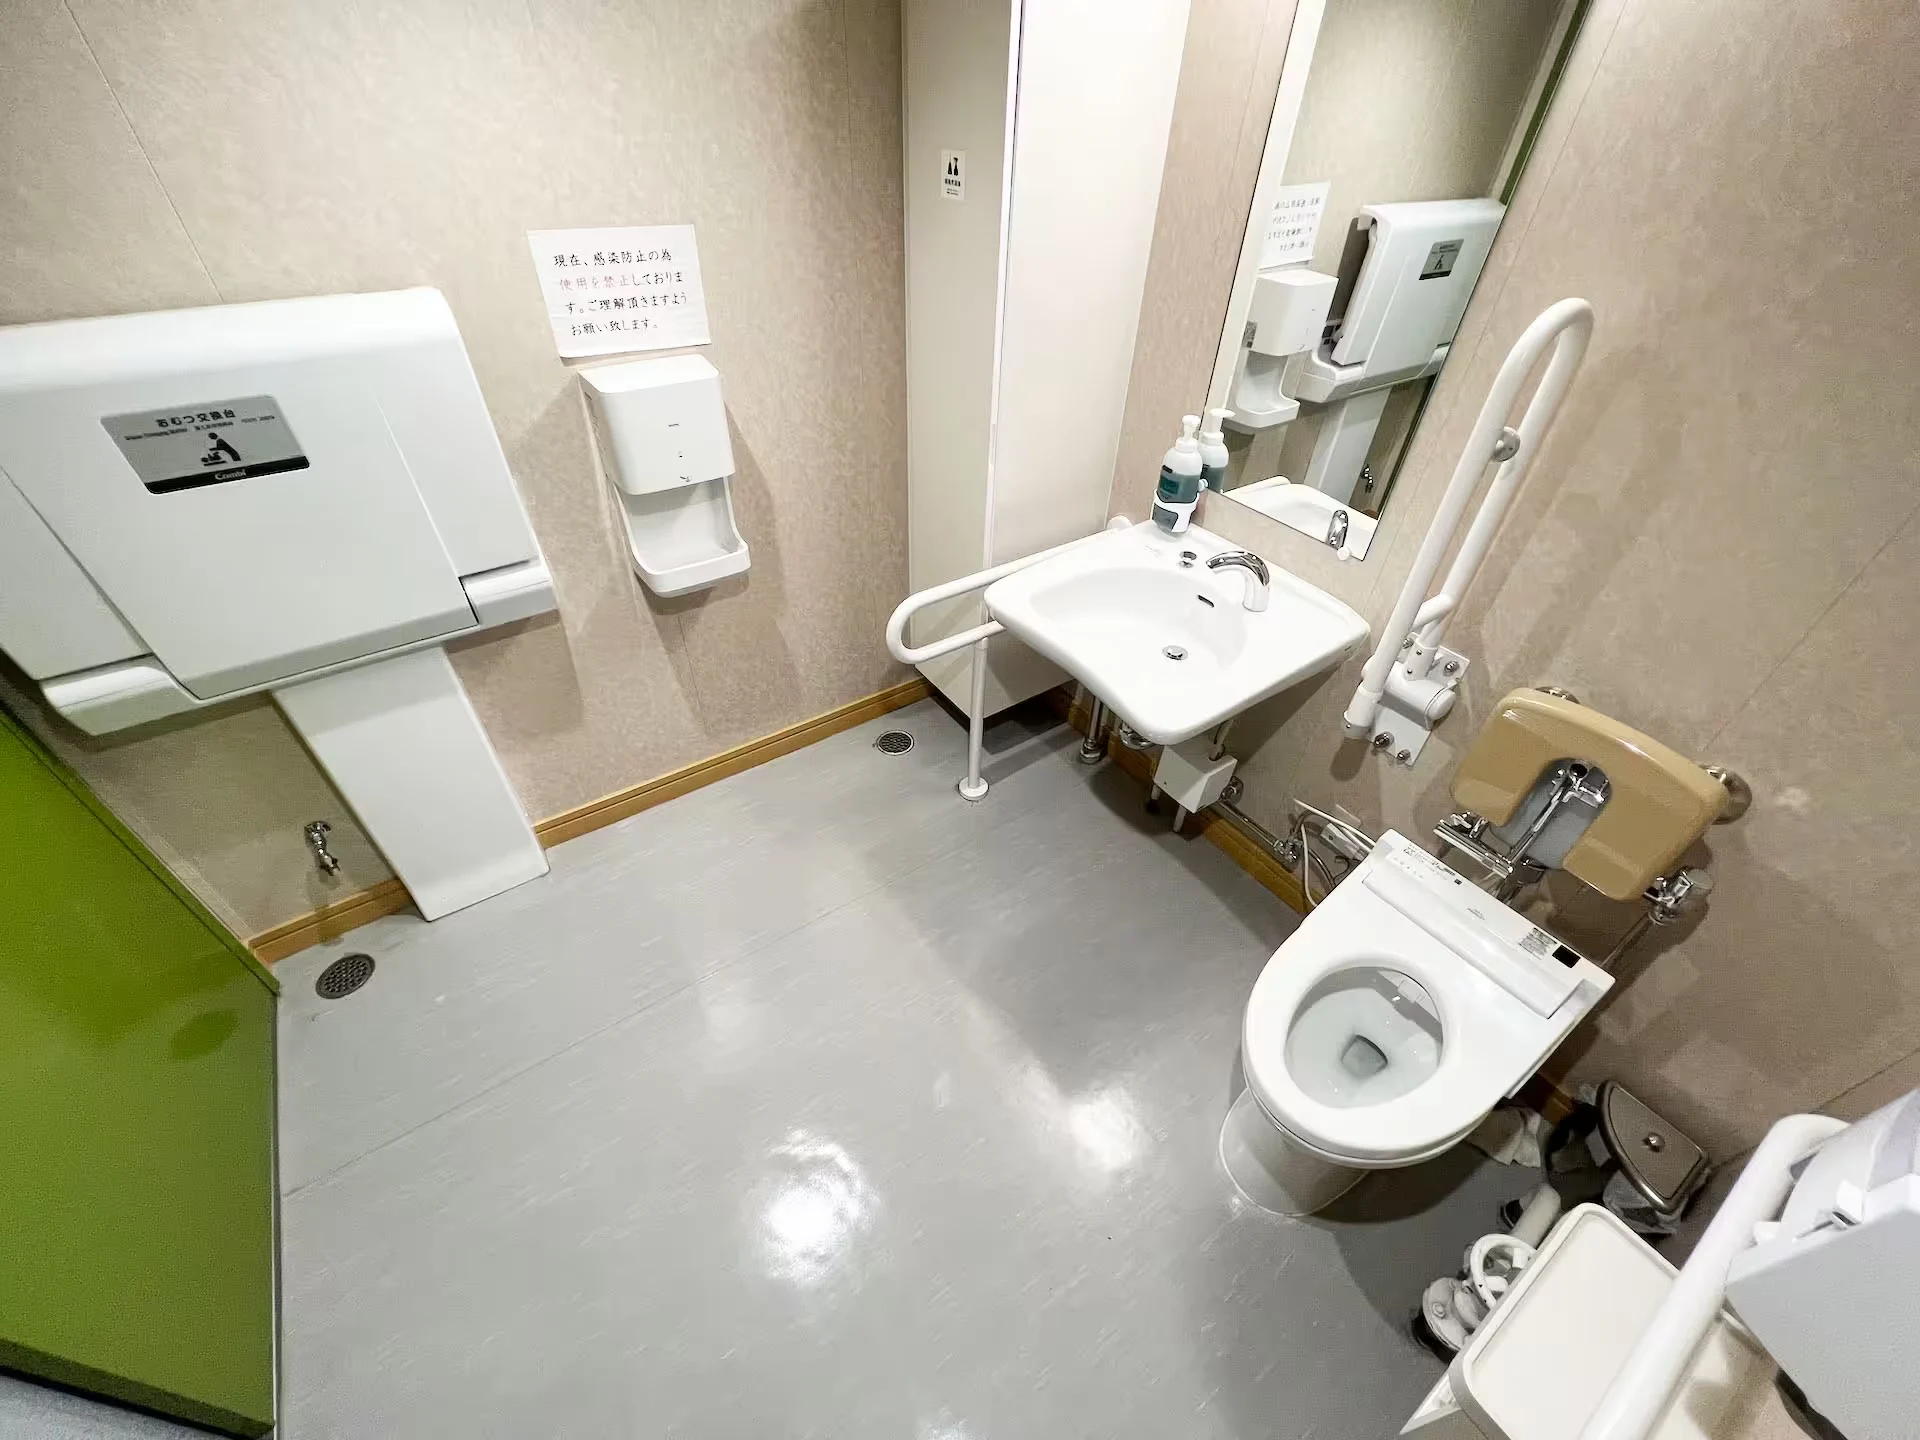 九州郵船うみてらし船内のバリアフリー対応トイレ